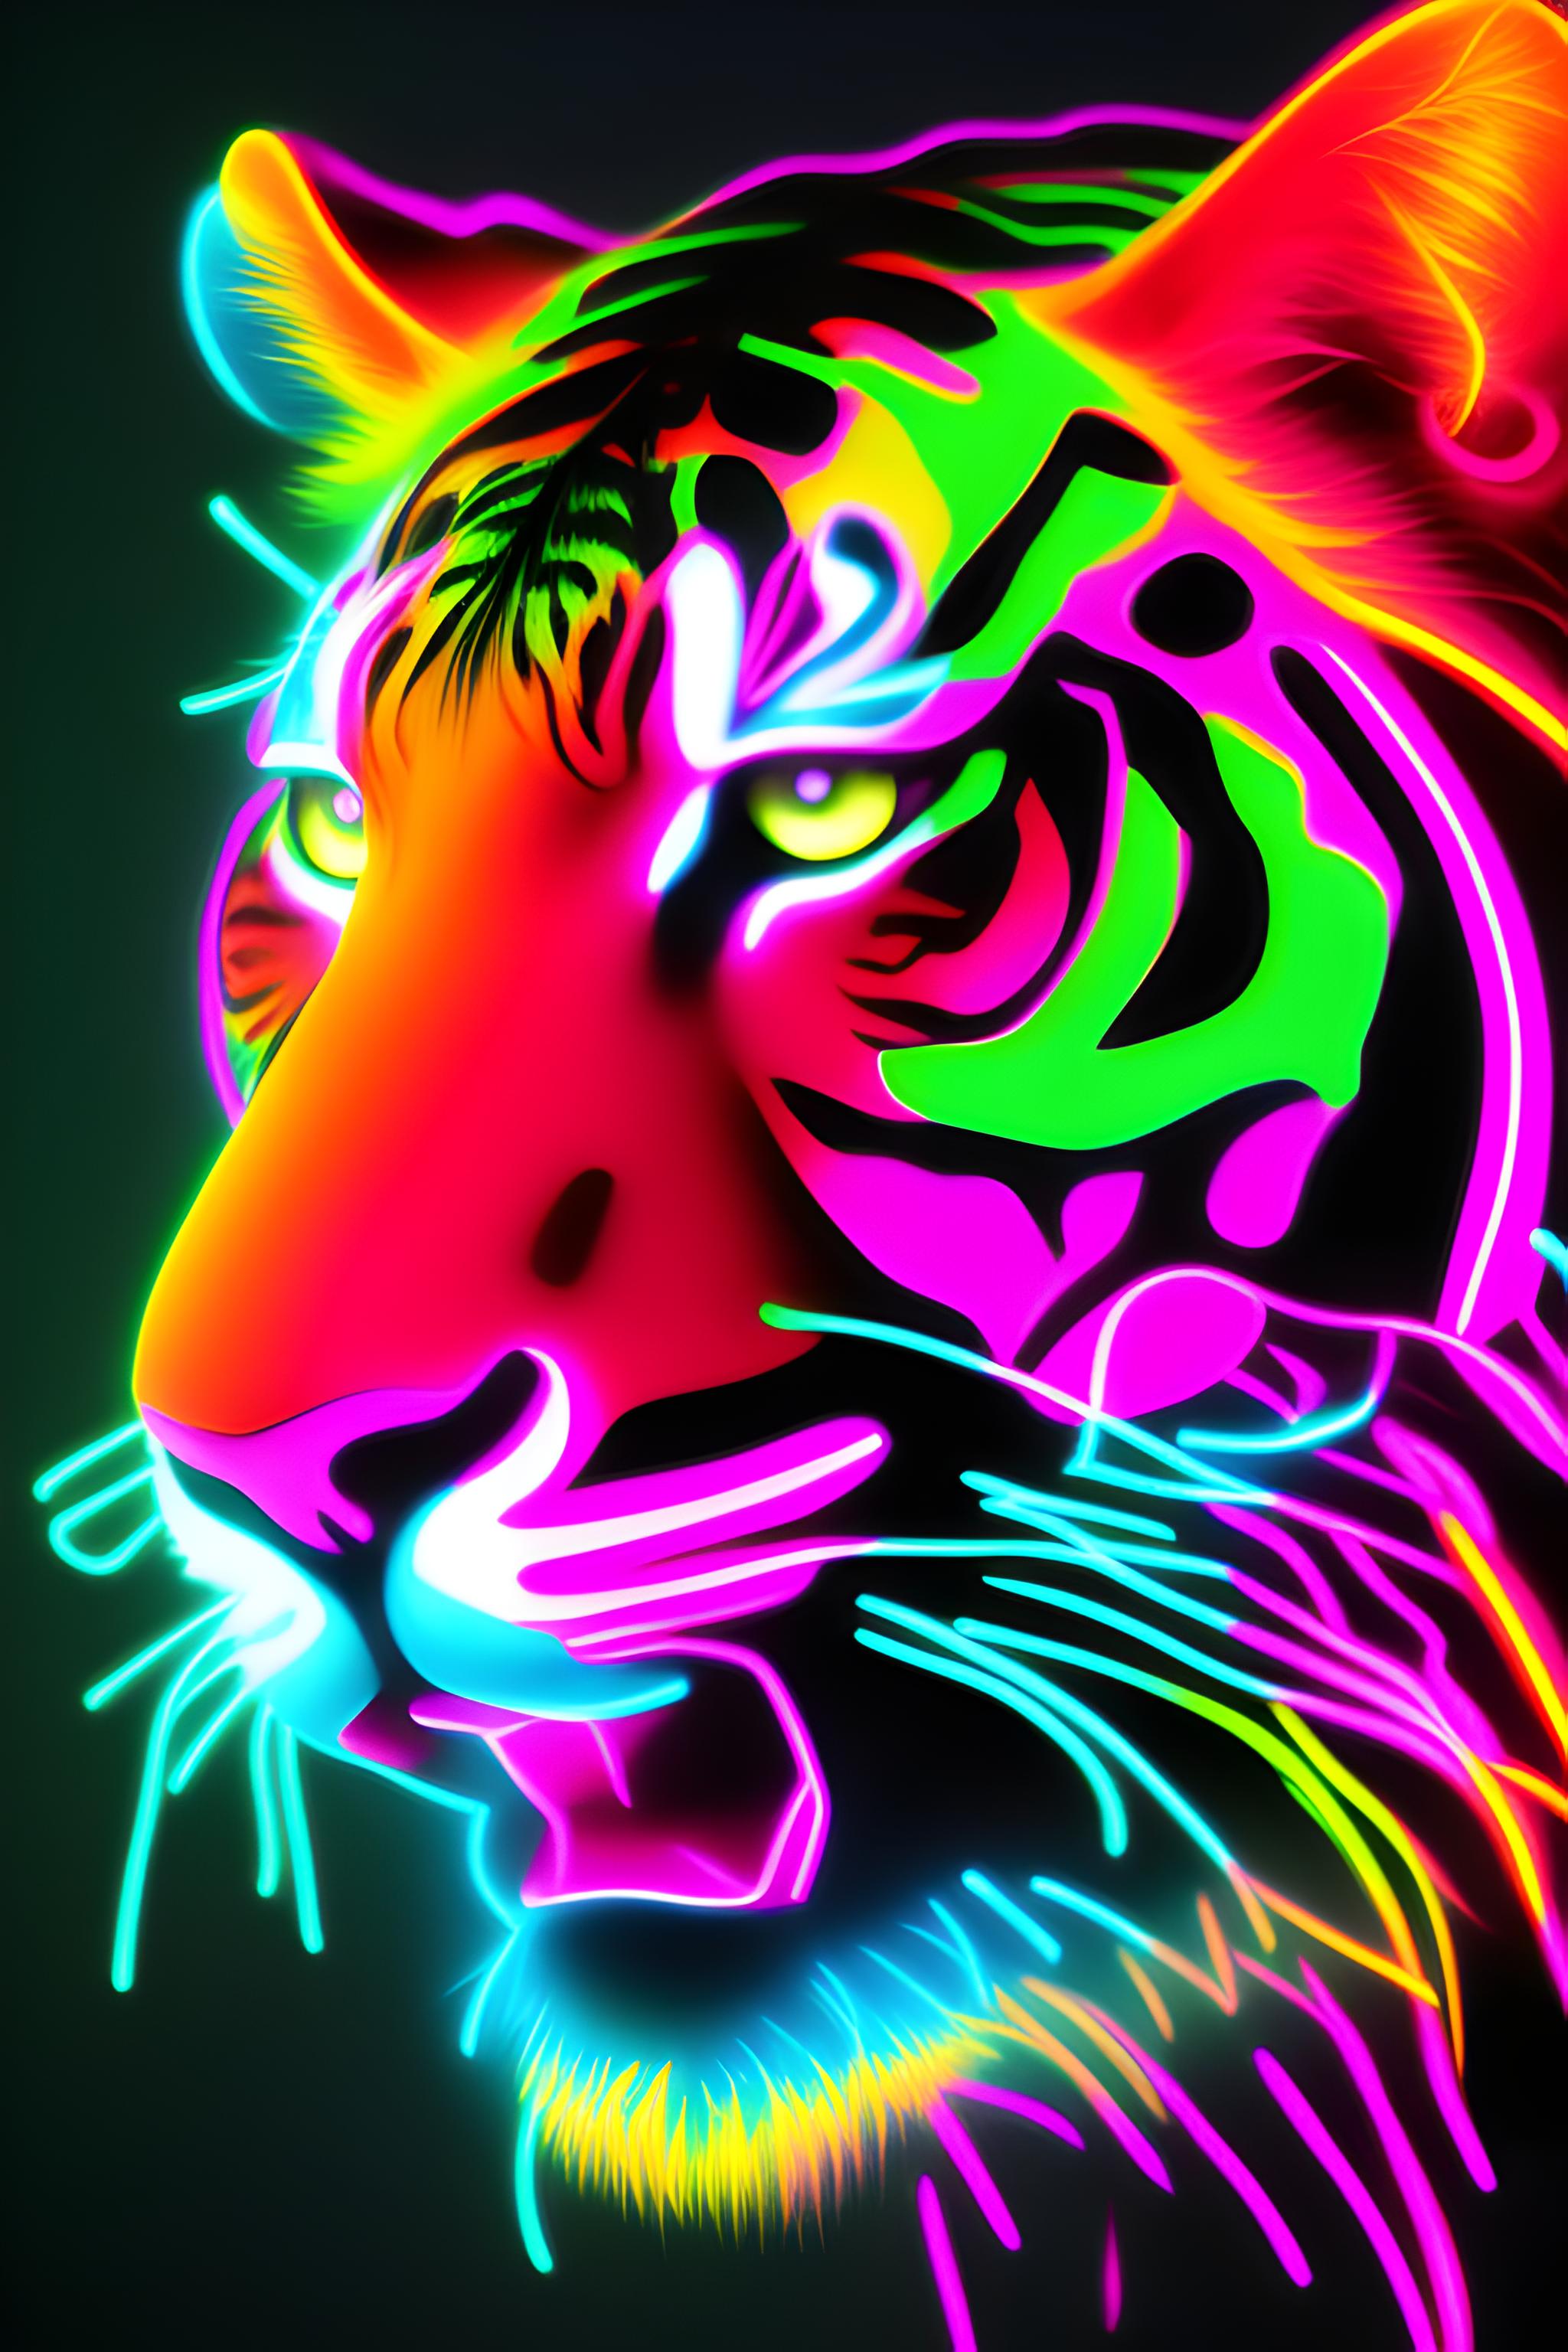 neon tiger